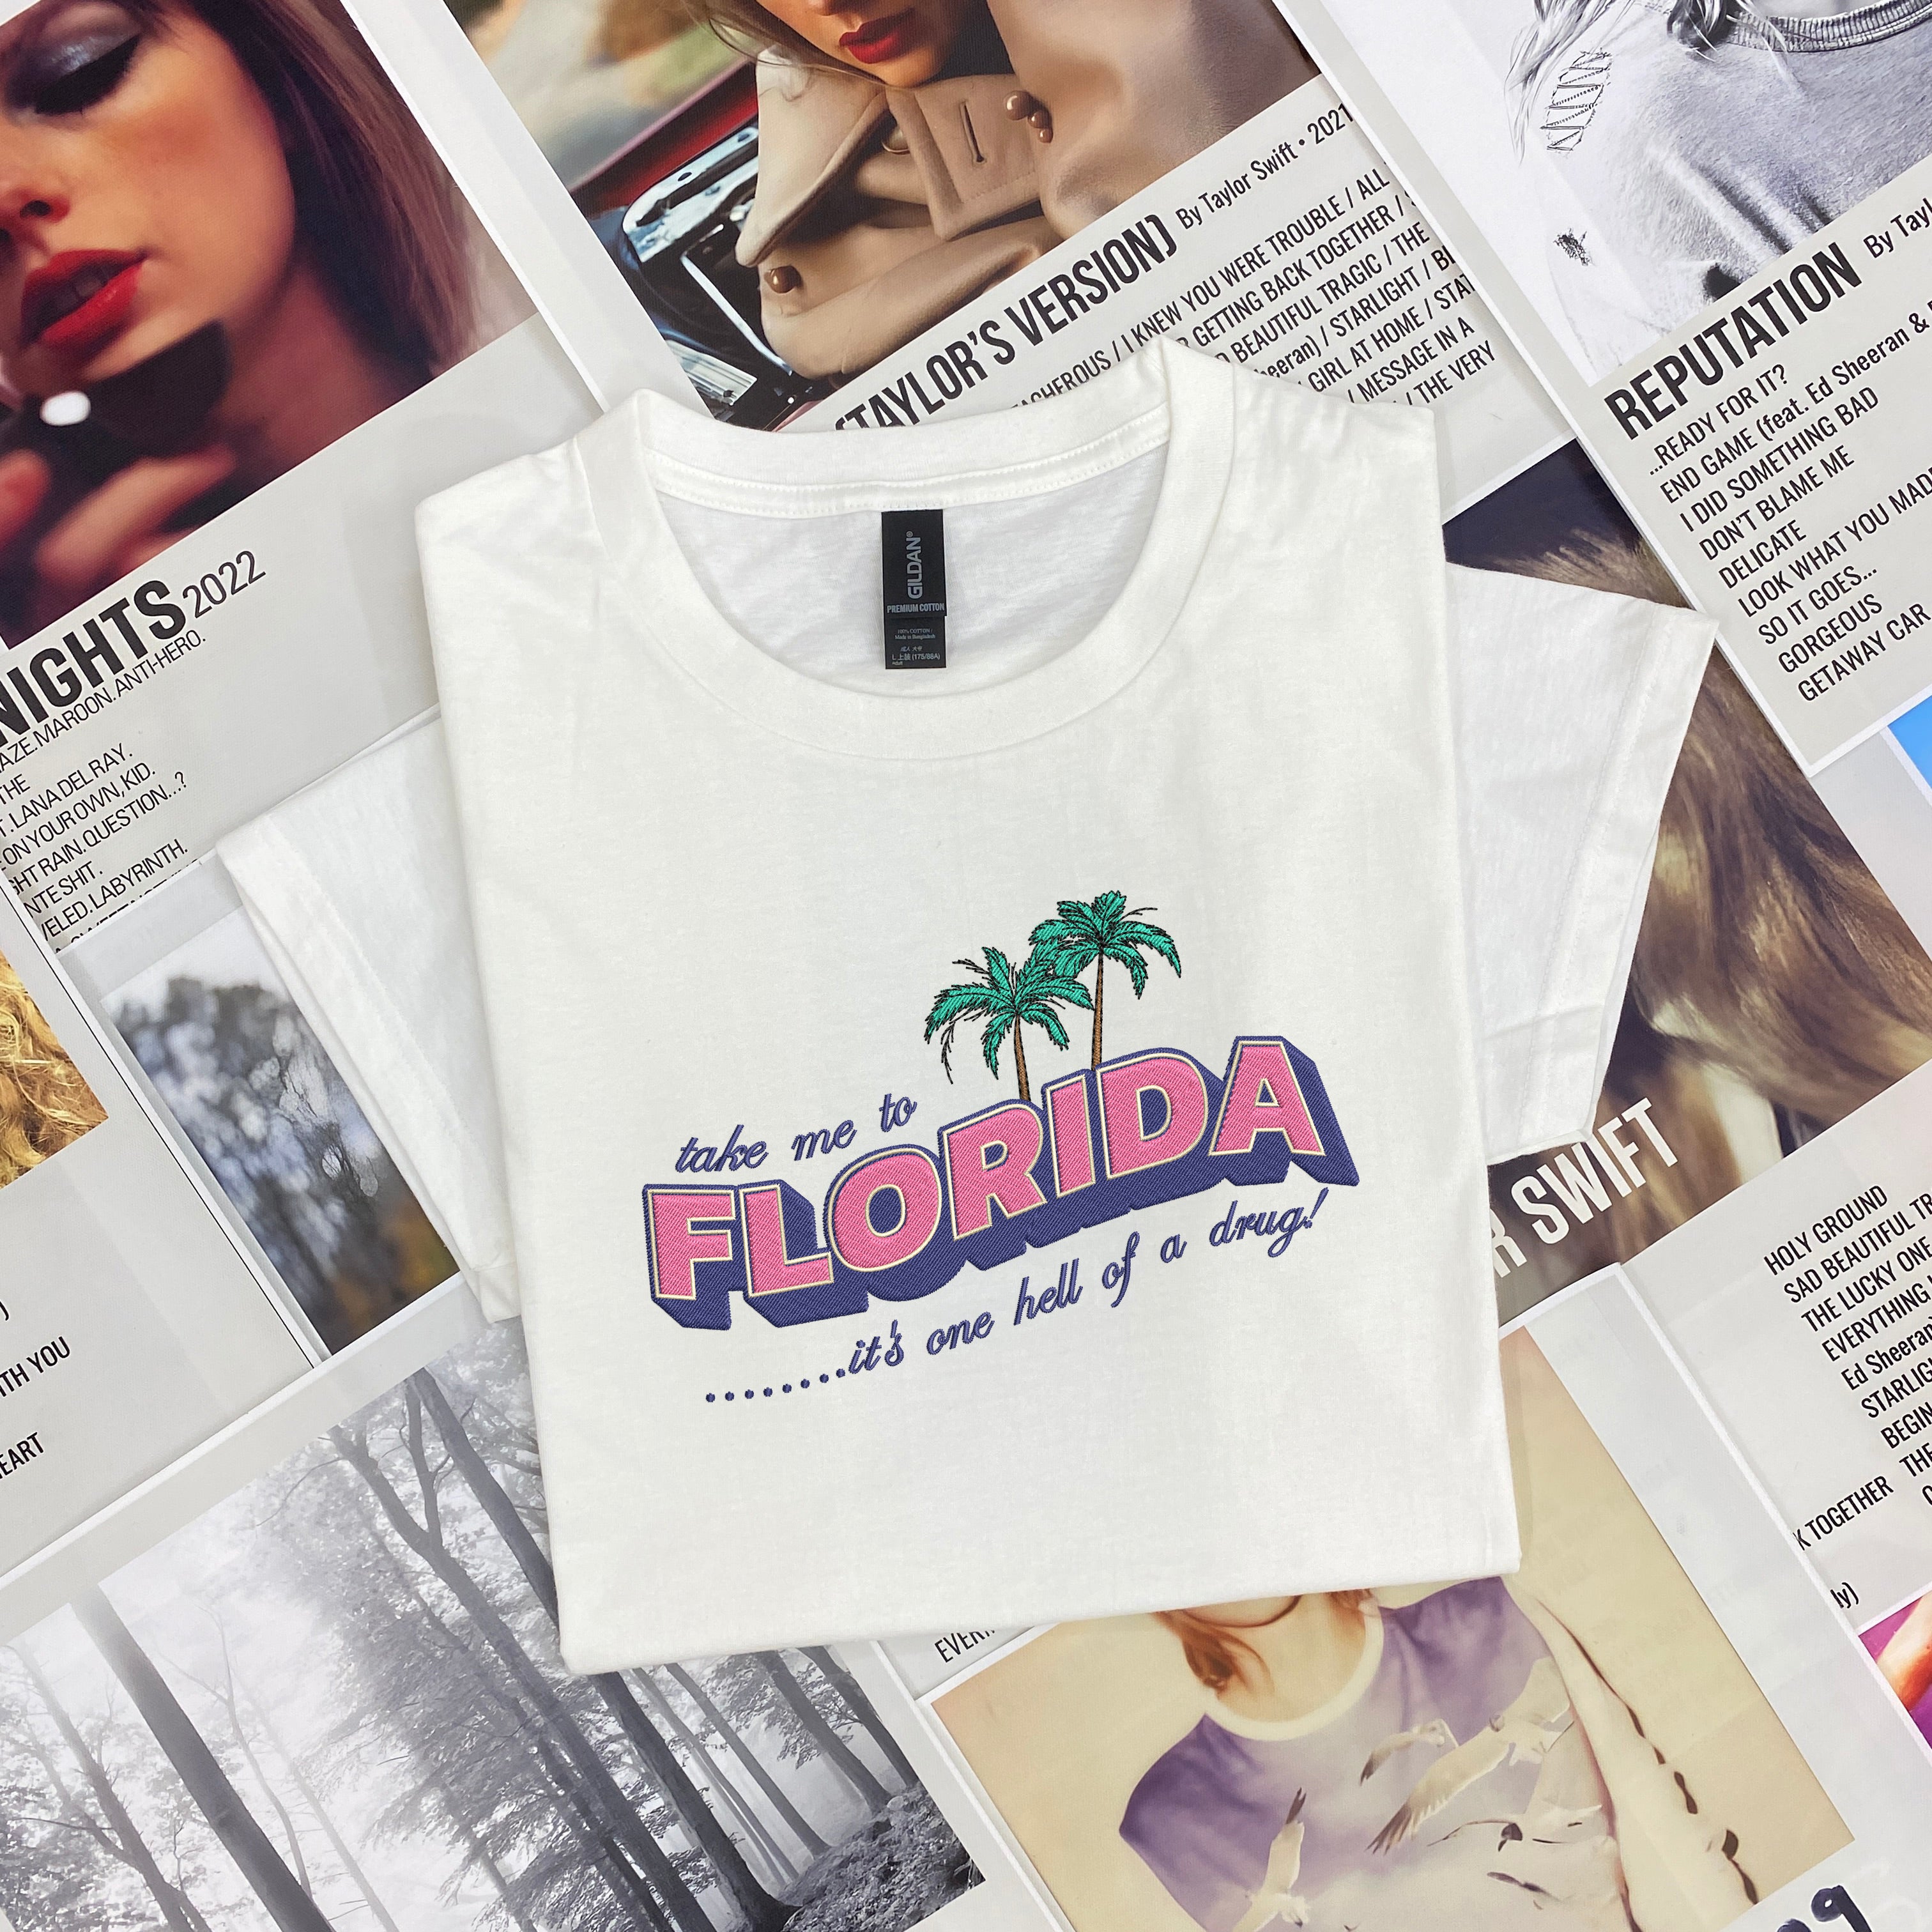 take me to florida embroidered shirt 1714028941461.jpg